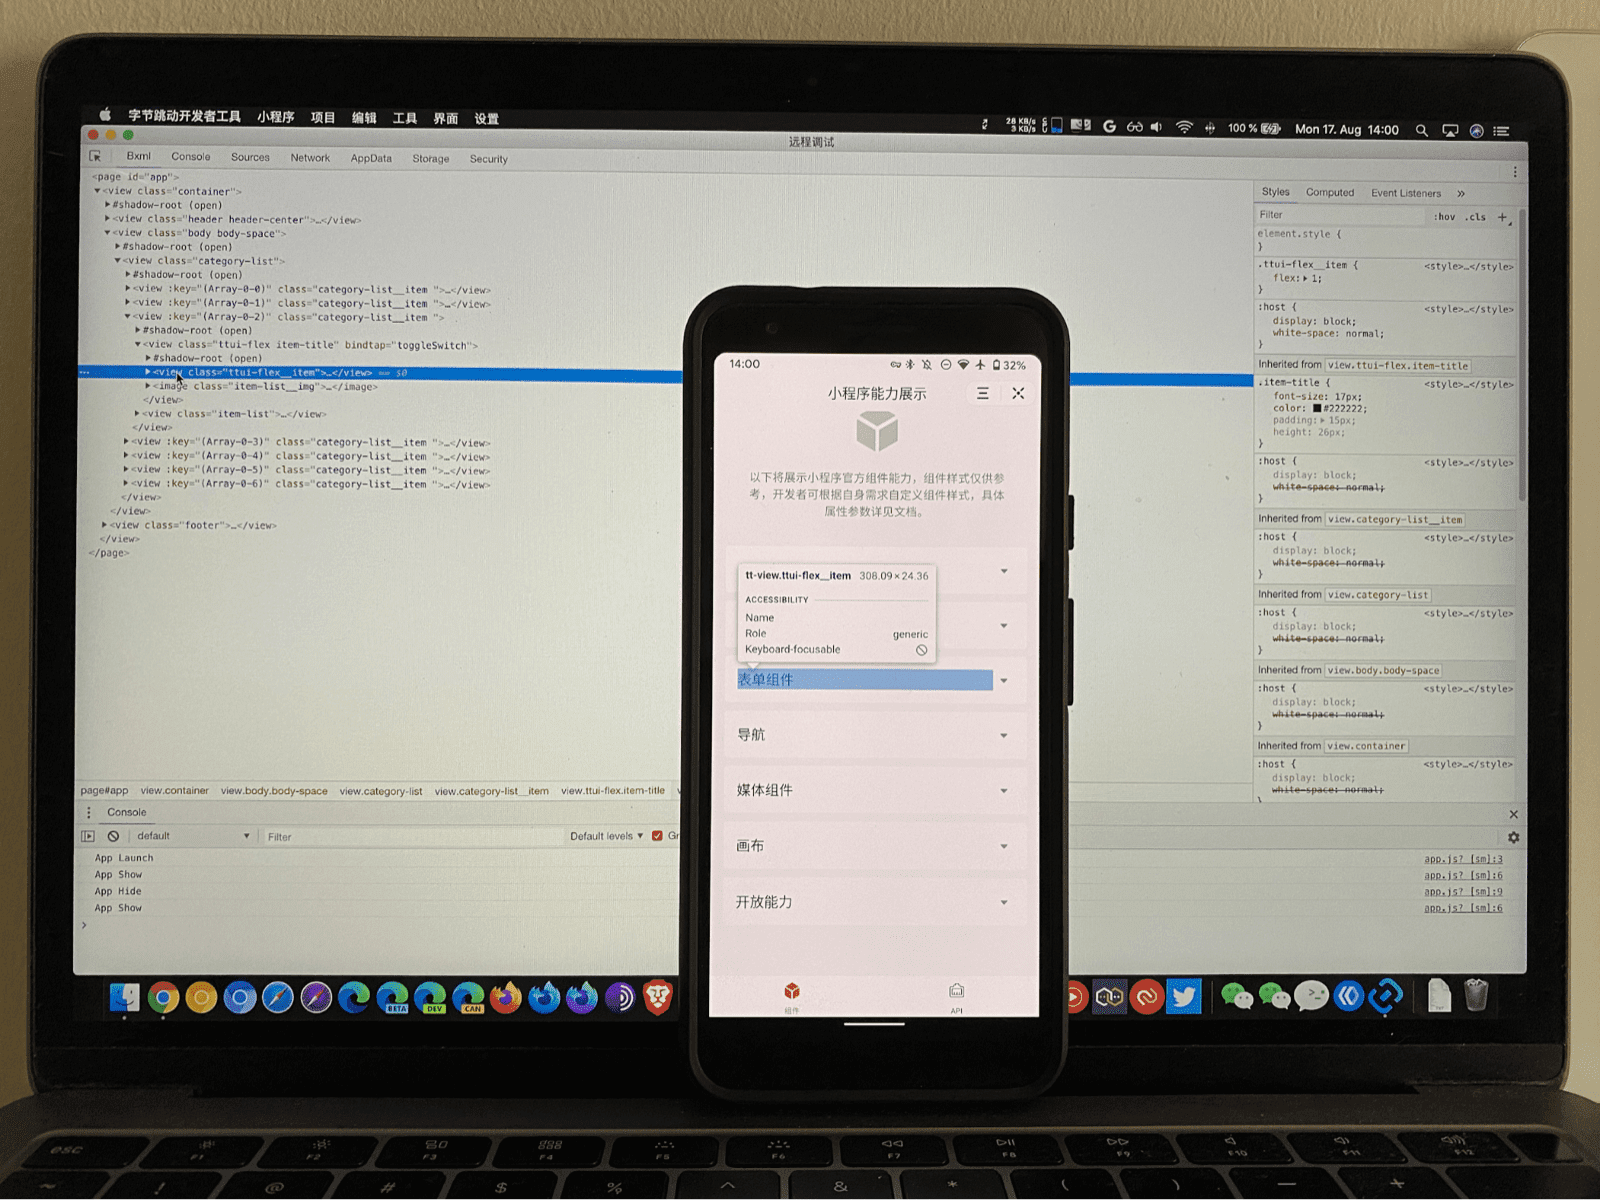 טלפון נייד שבו פועלת מיני אפליקציה, וחלקים מממשק המשתמש מודגשים על ידי הכלי לניפוי באגים של ByteDance DevTools שפועל במחשב נייד שבודק אותו.